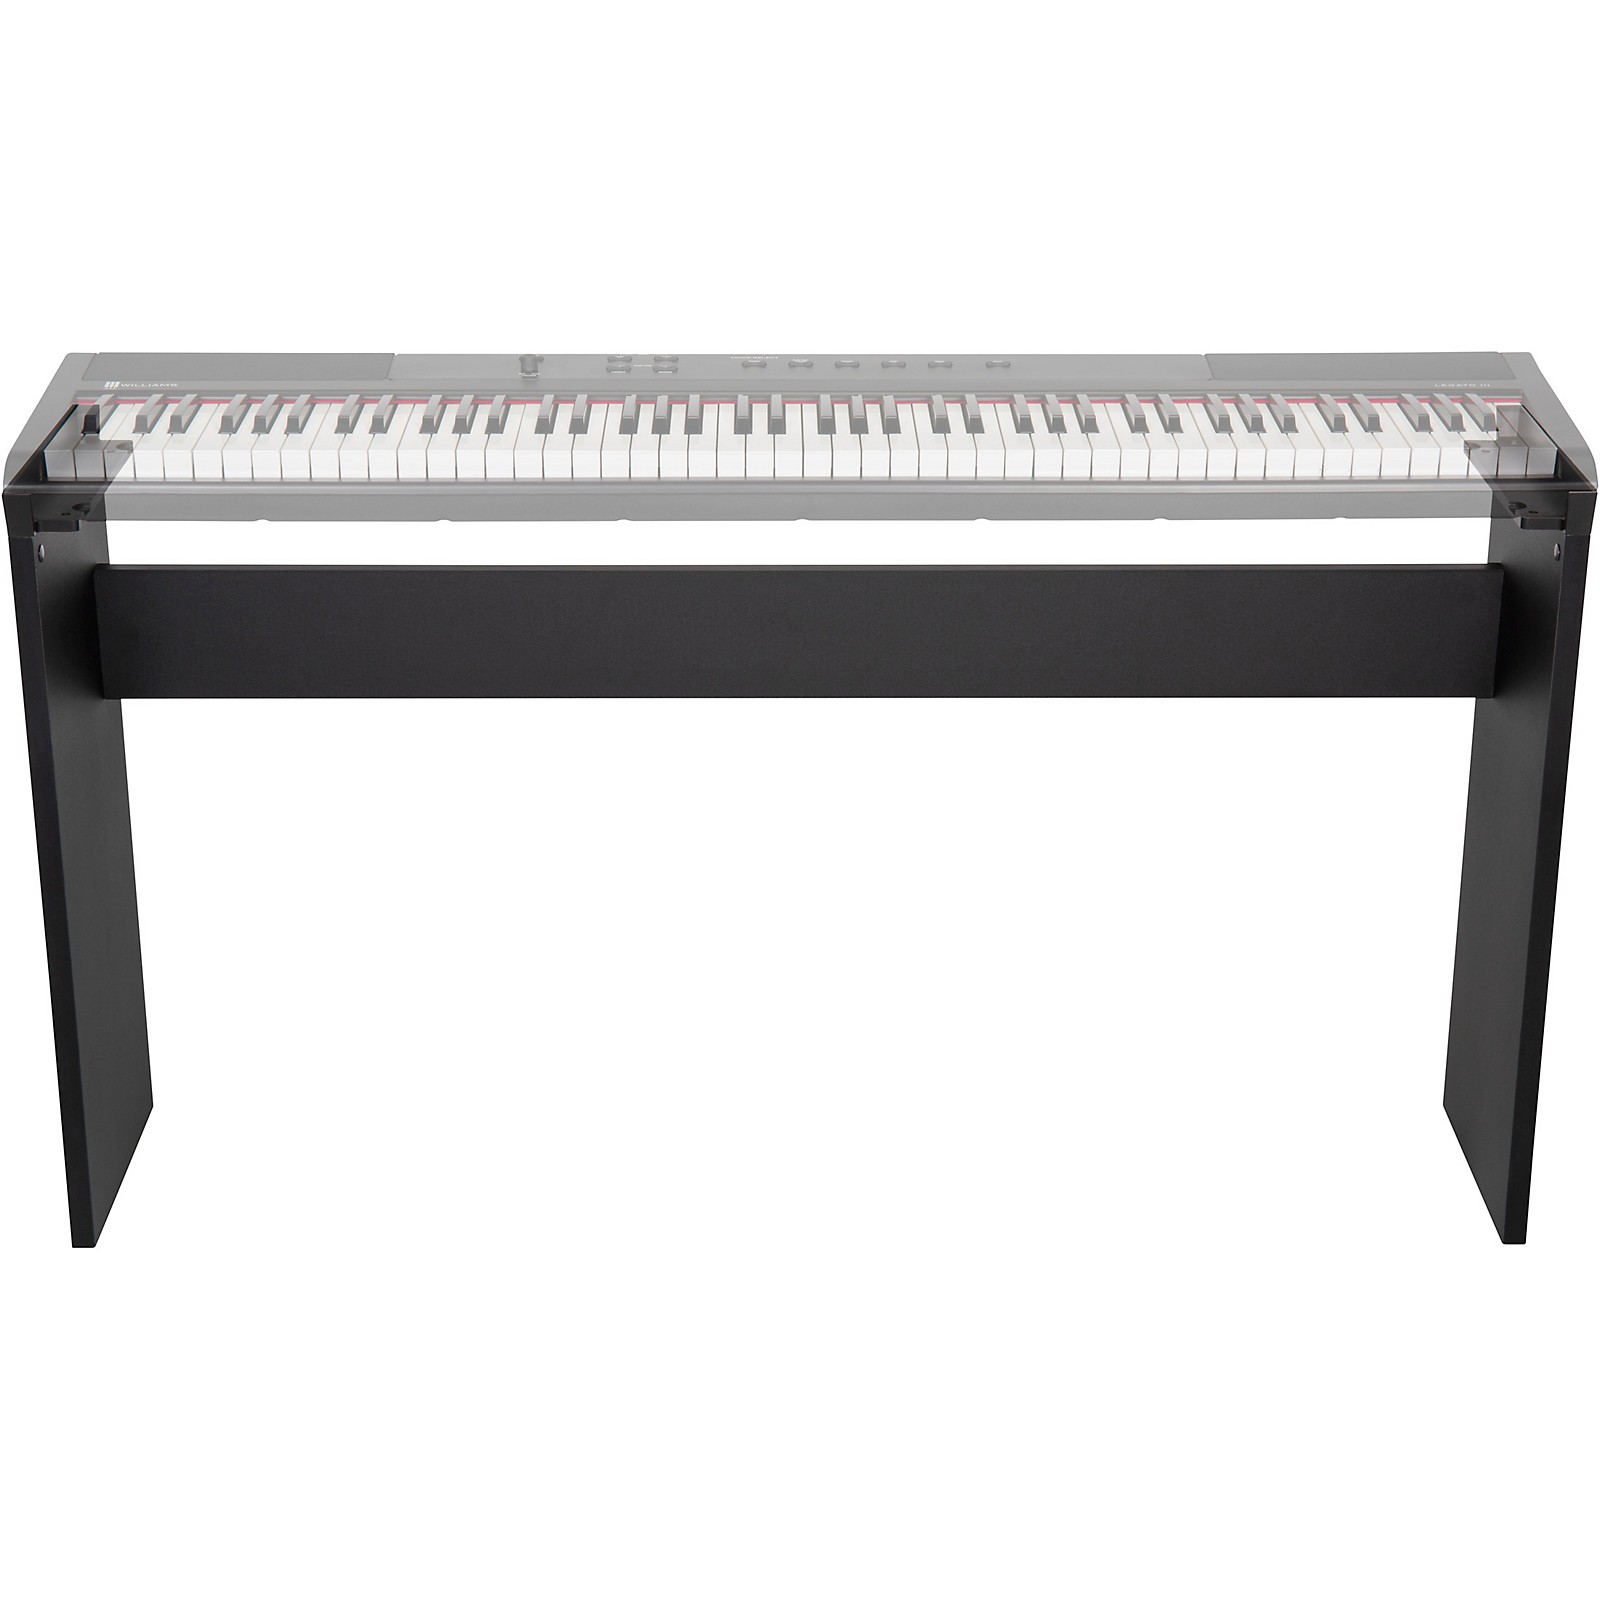 Casio Wk 7500 Digital Keyboard Bundle W Stageline Piano Bench X Style Stand Walmart Com Walmart Com